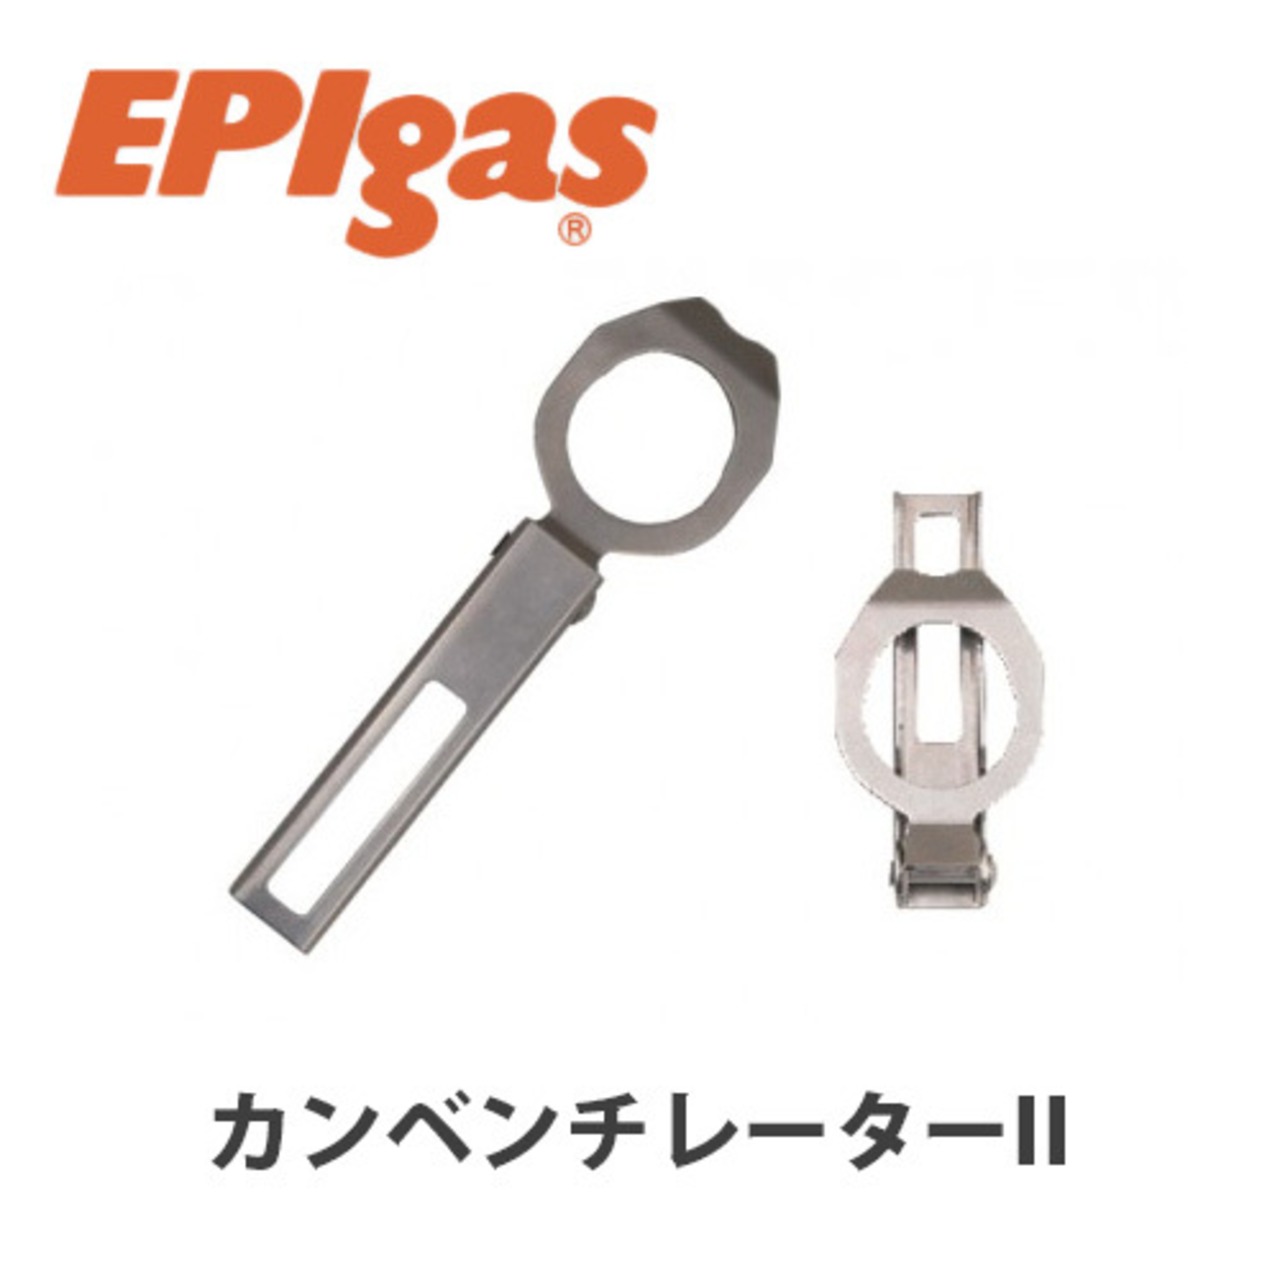 EPIgas(イーピーアイ ガス) カンベンチレーターII カートリッジ 穴あけ